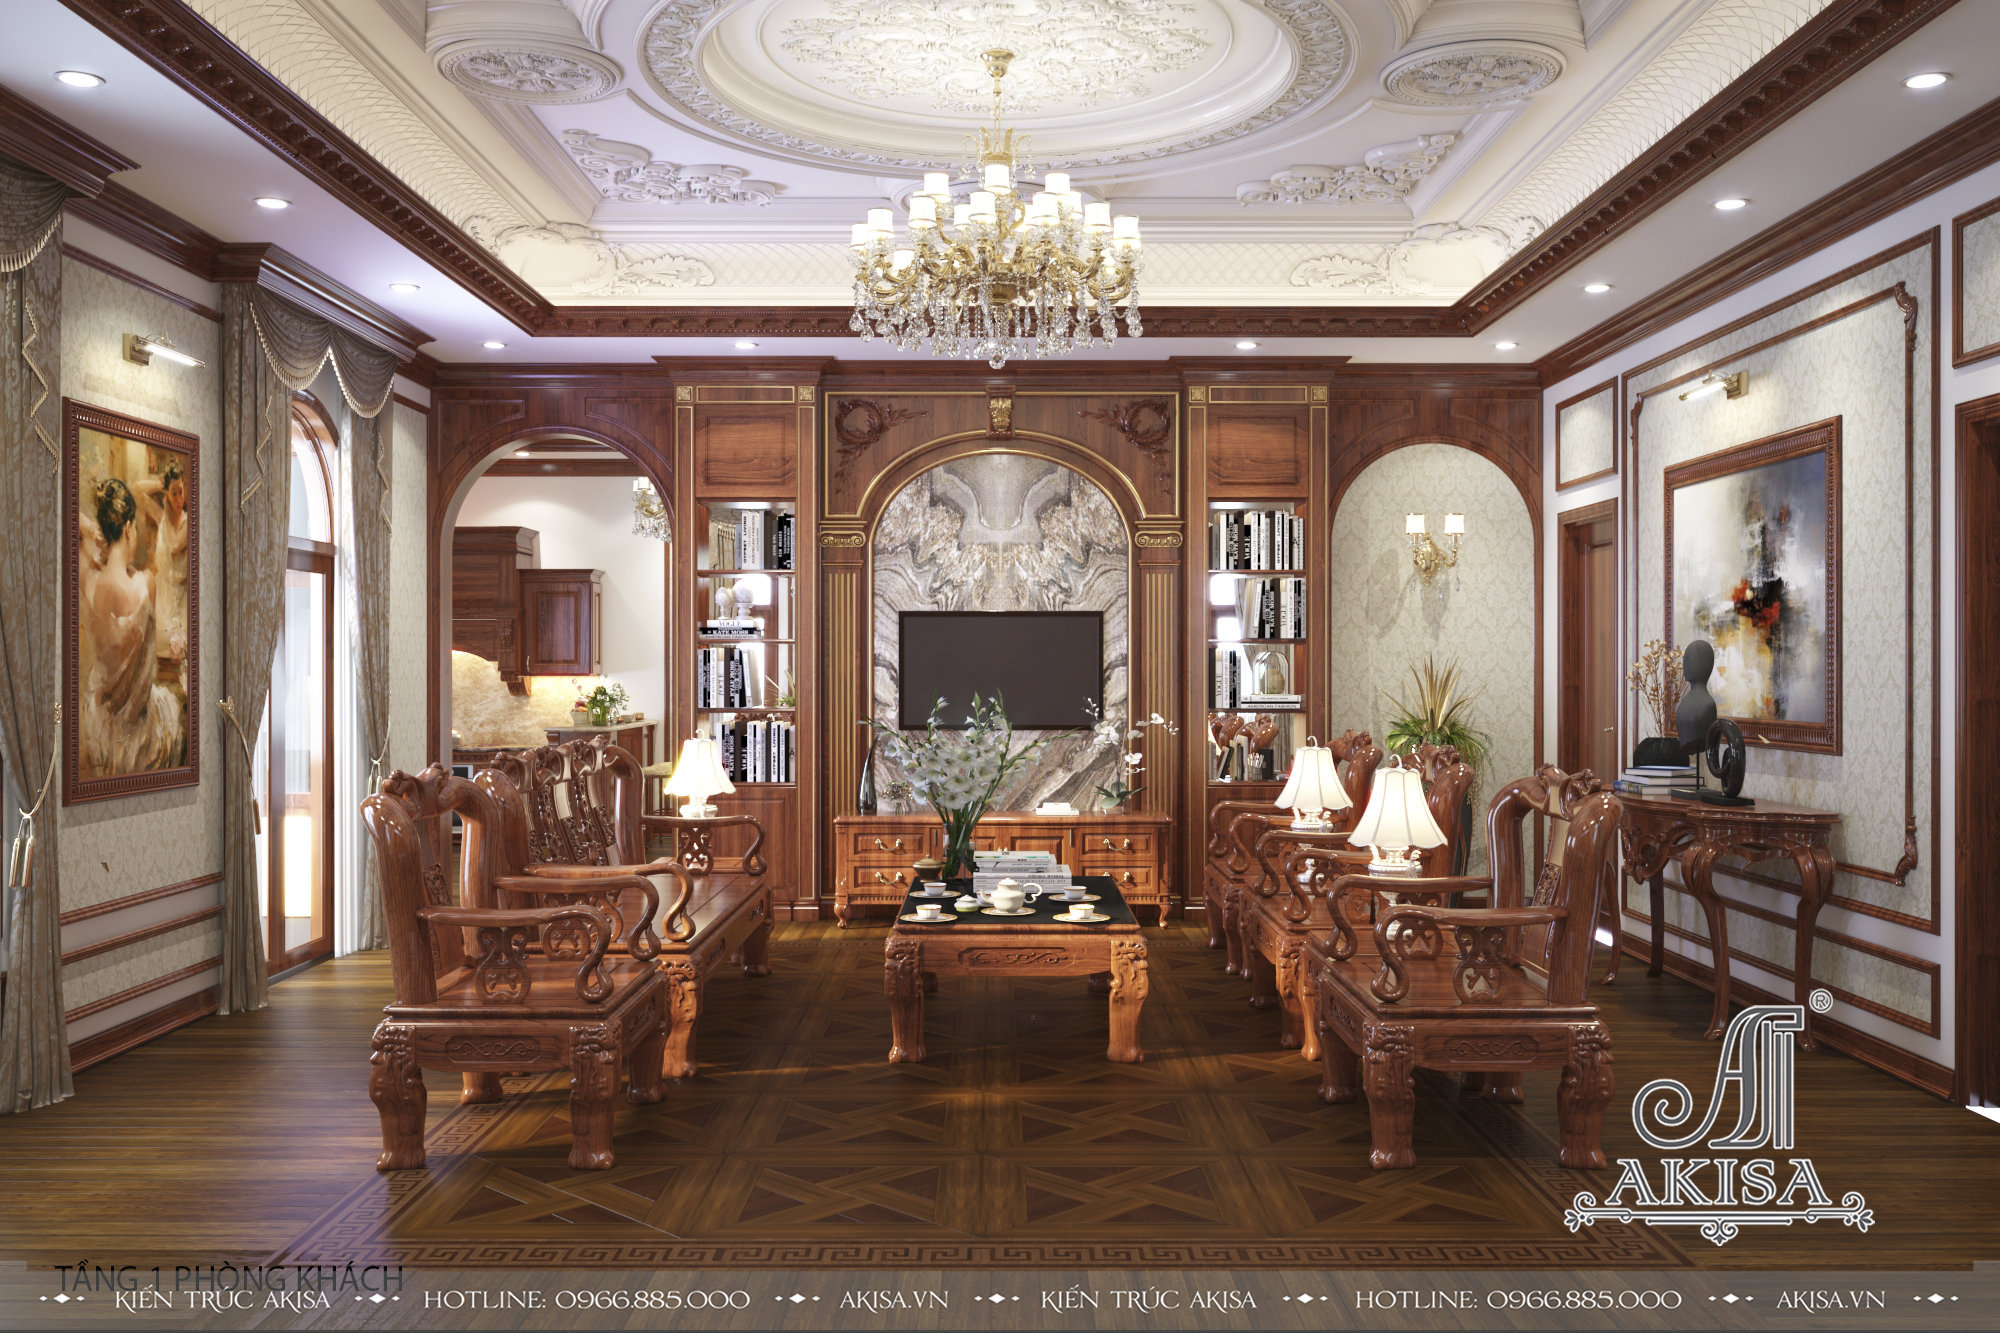 Phòng khách nổi bật với nội thất bằng gỗ tự nhiên cao cấp sang trọng với những hoa văn điêu khắc tinh xảo, quý phái